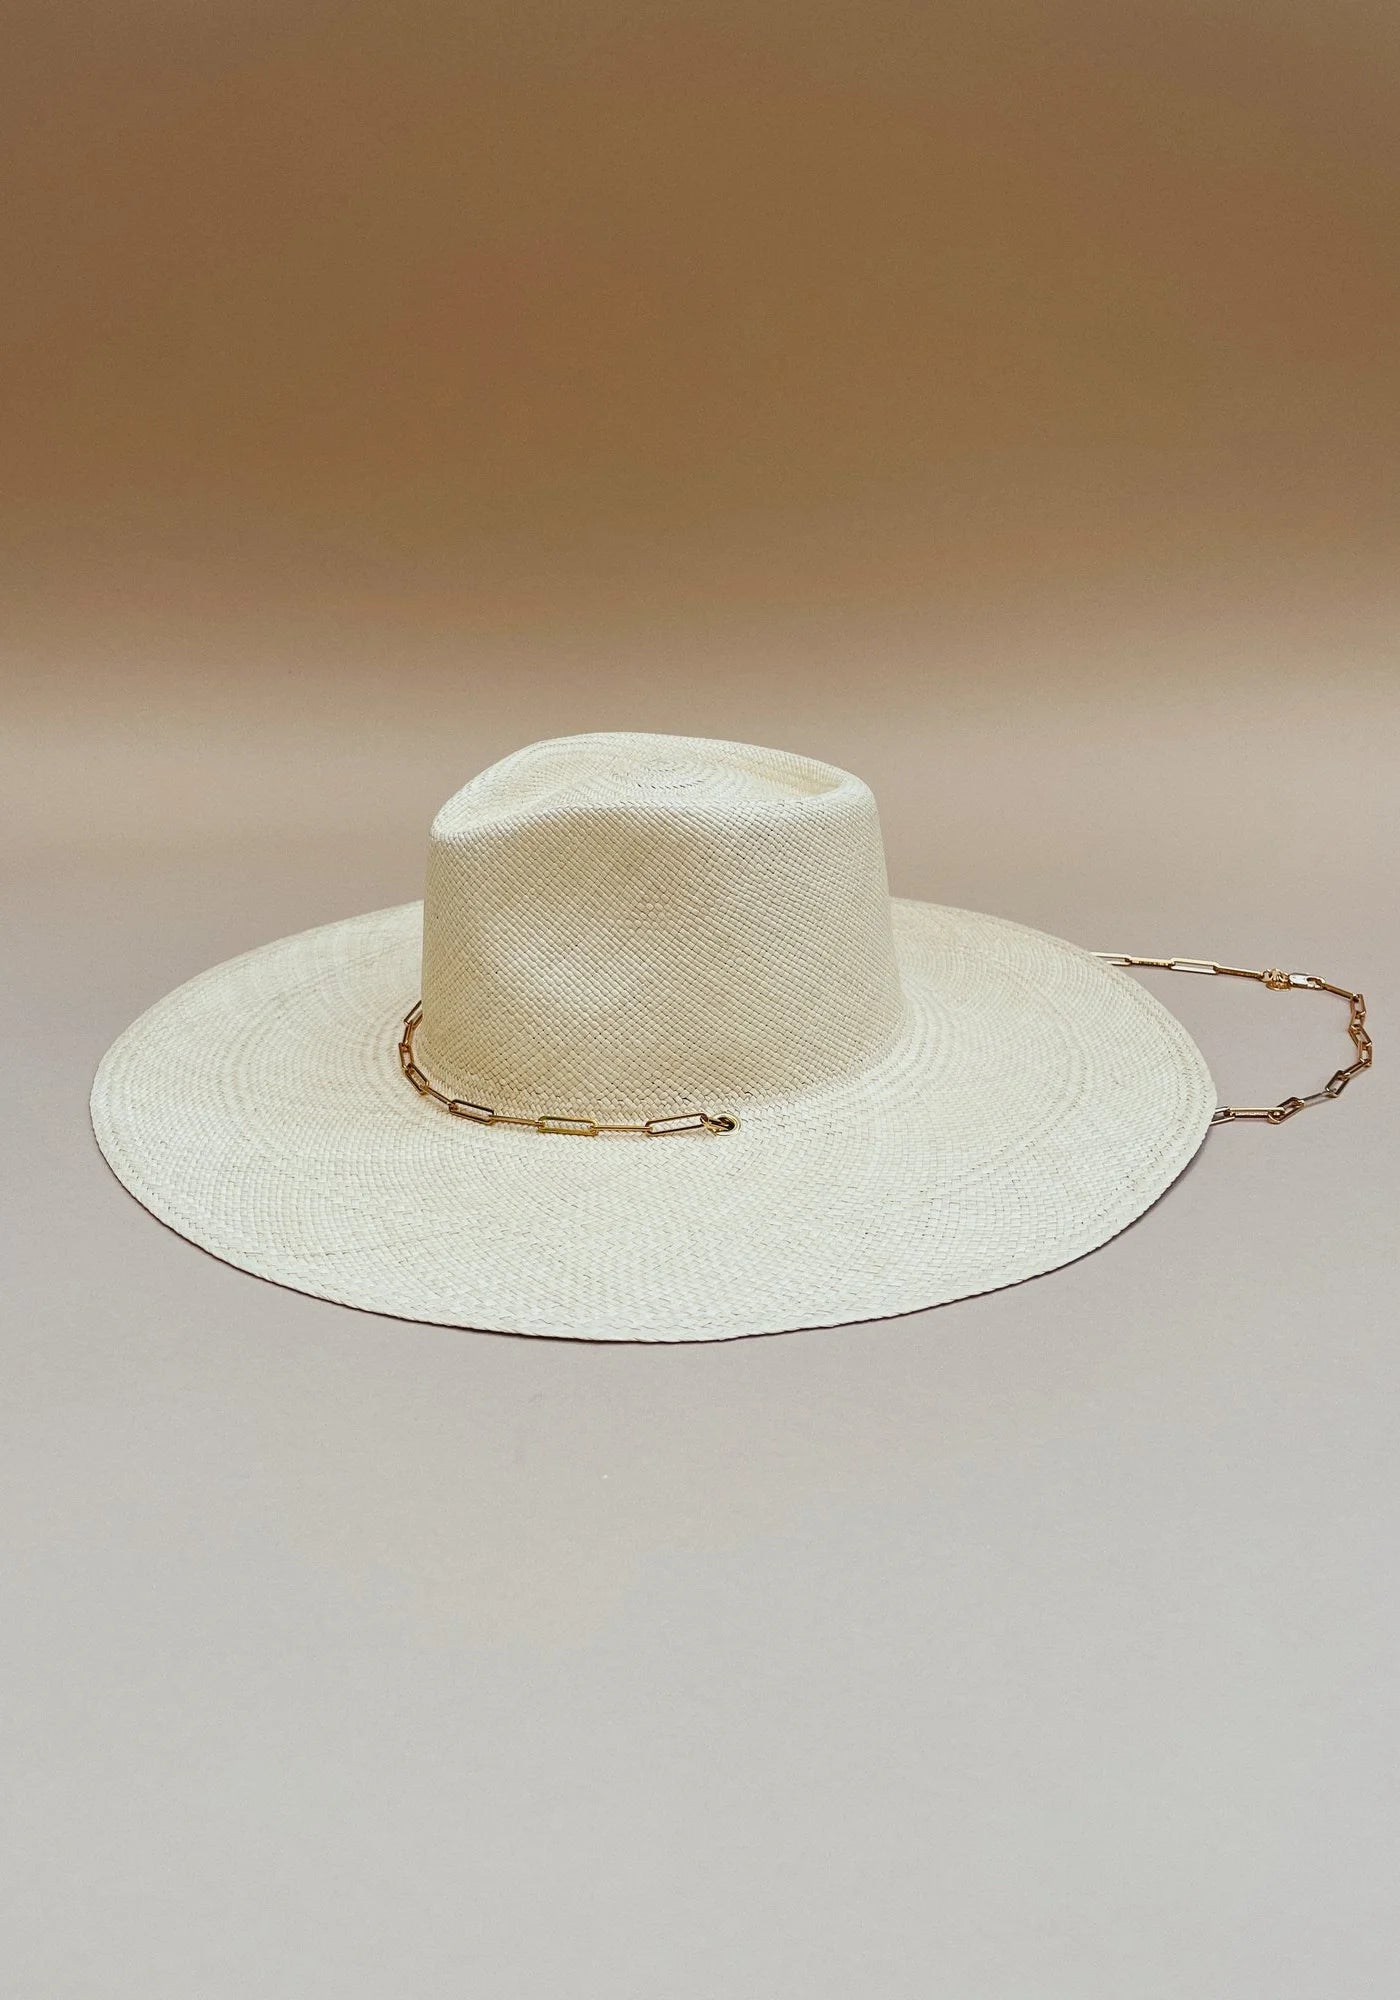 Le chapeau de paille avec chaîne Livy Junior natural pour femme de chez Van Palma